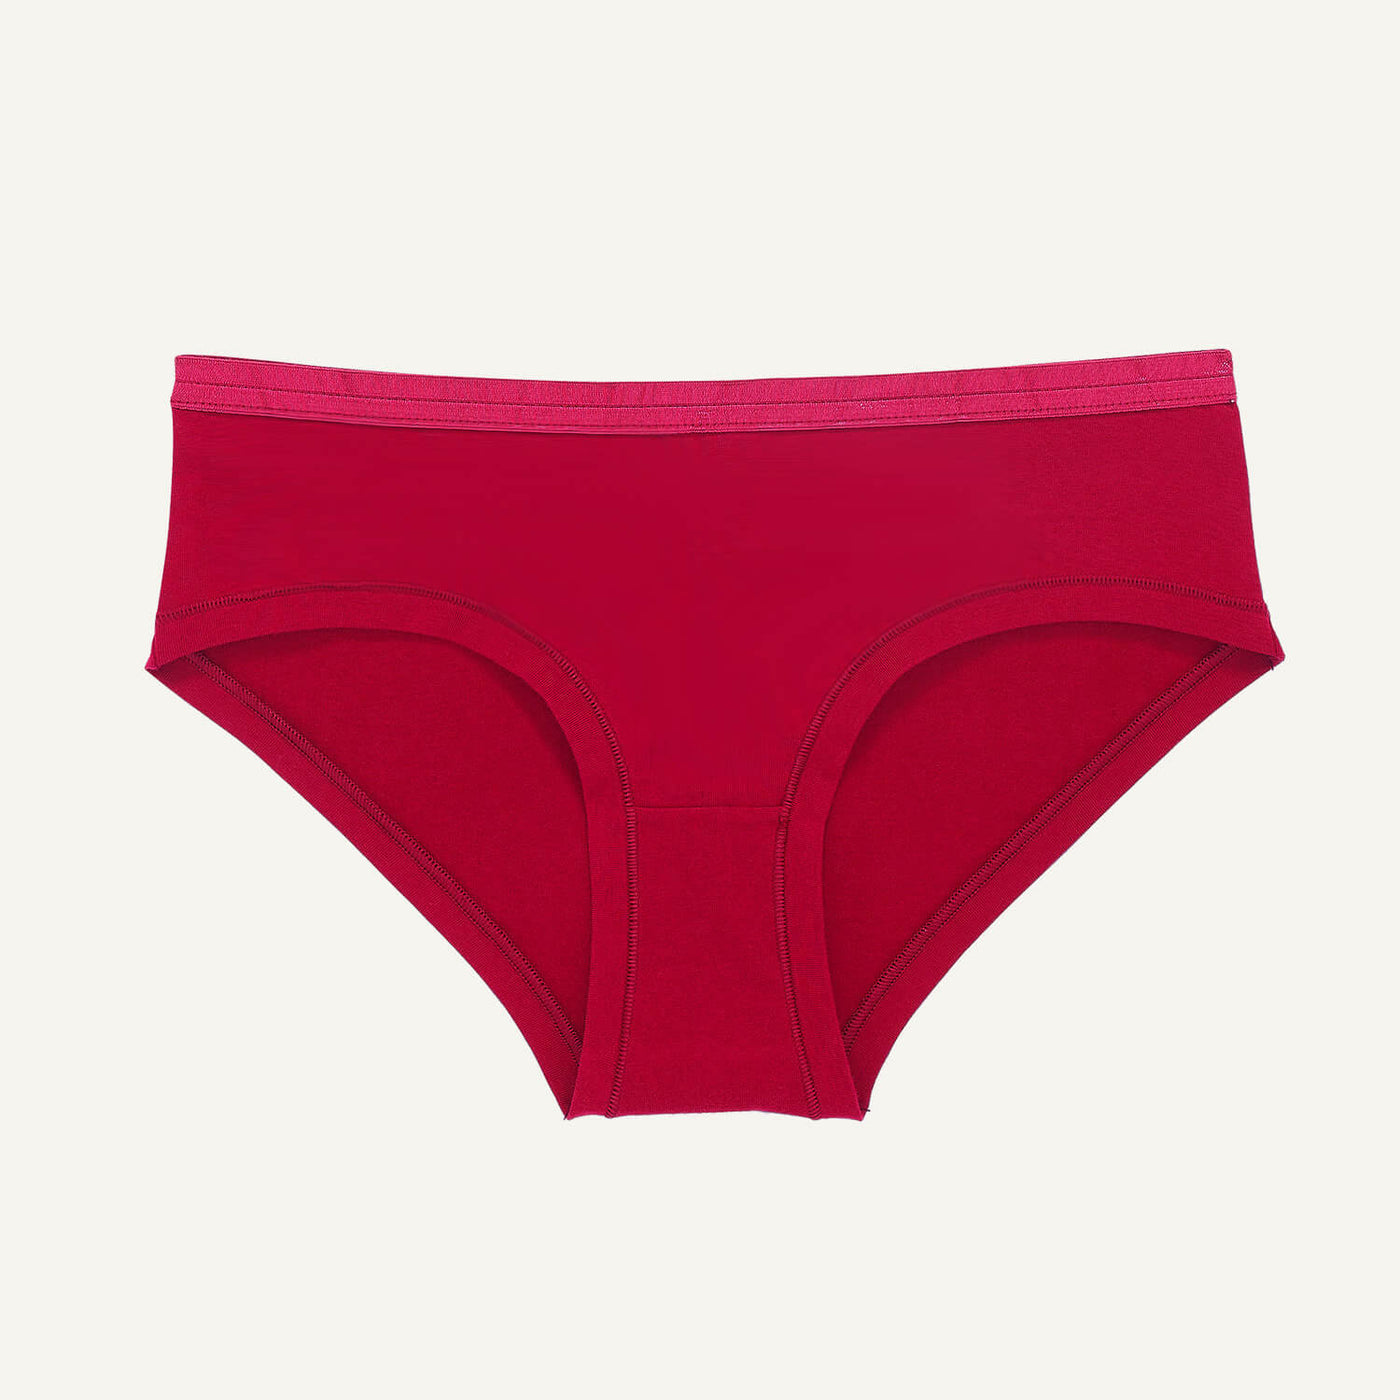 Hipster Brief, Organic Cotton Womens Underwear